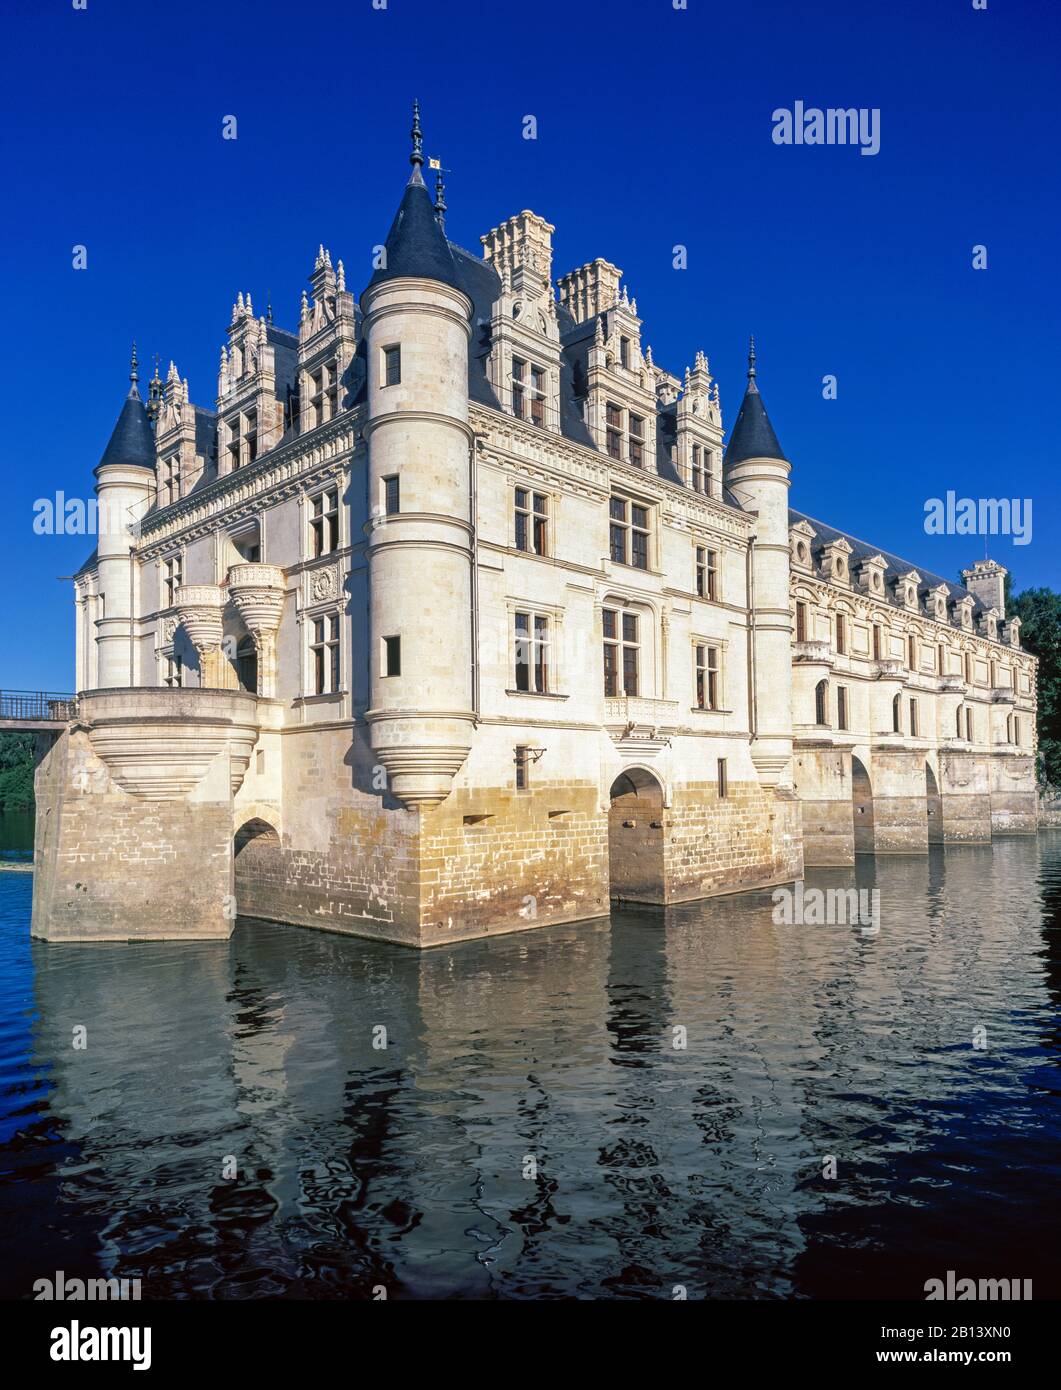 Chateau de Chenonceau,Chenonceaux,France Stock Photo